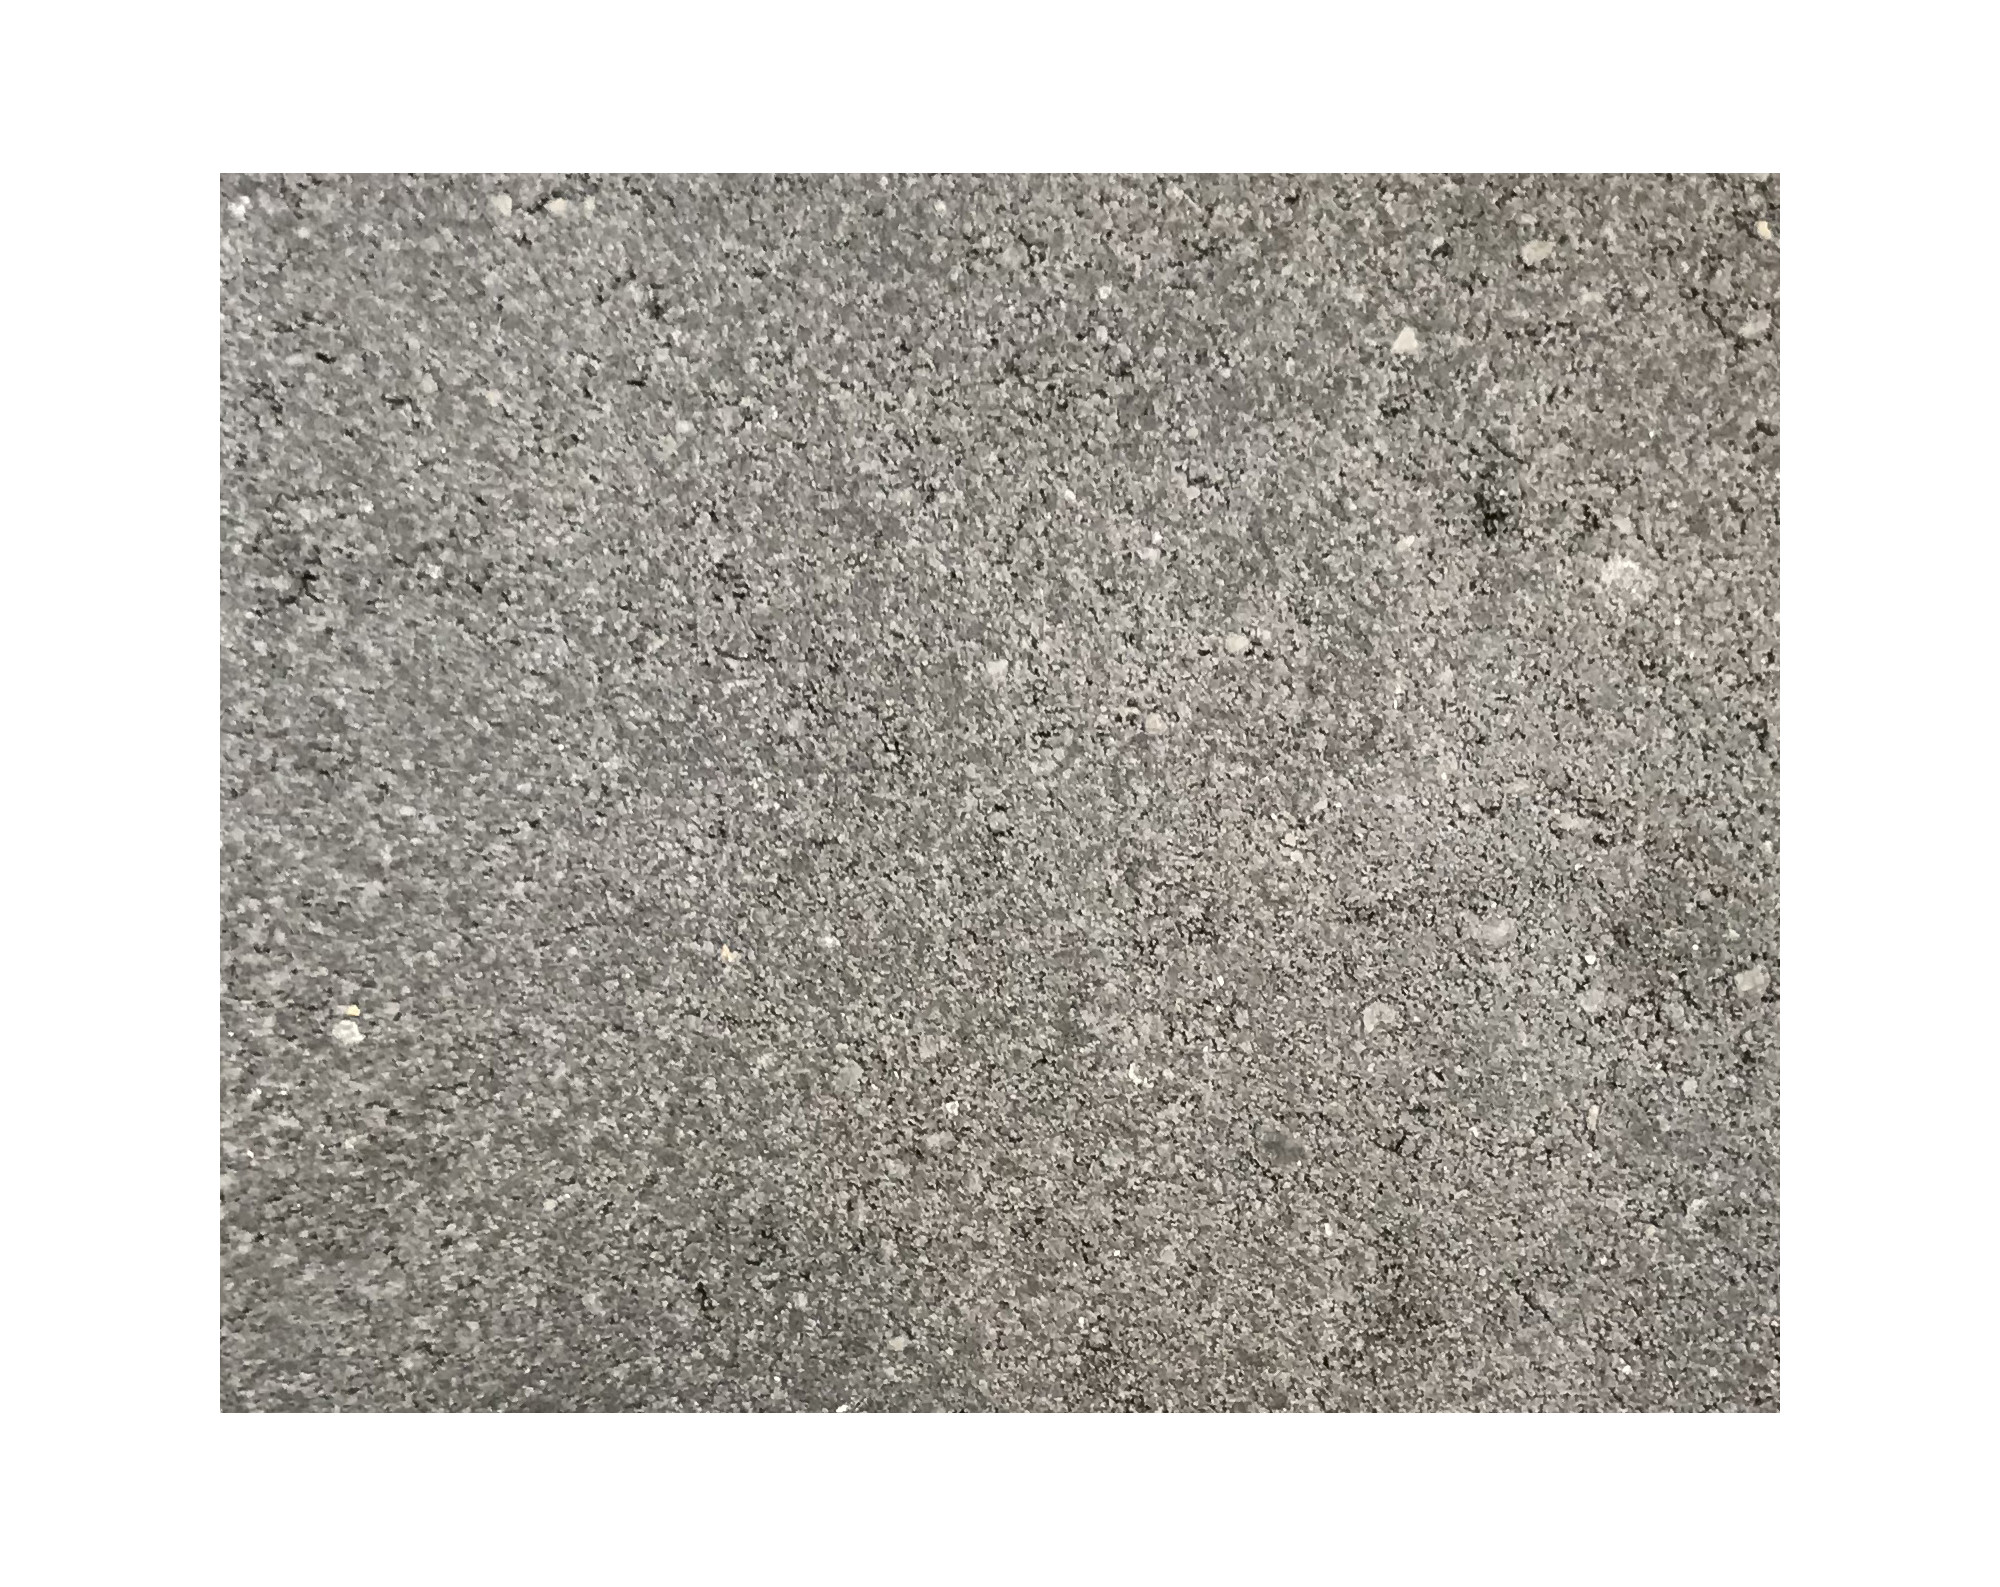 Harmo roc athenset, rustica-serie, ovaal d: 6,00mx12,60m, a.zwart, beton